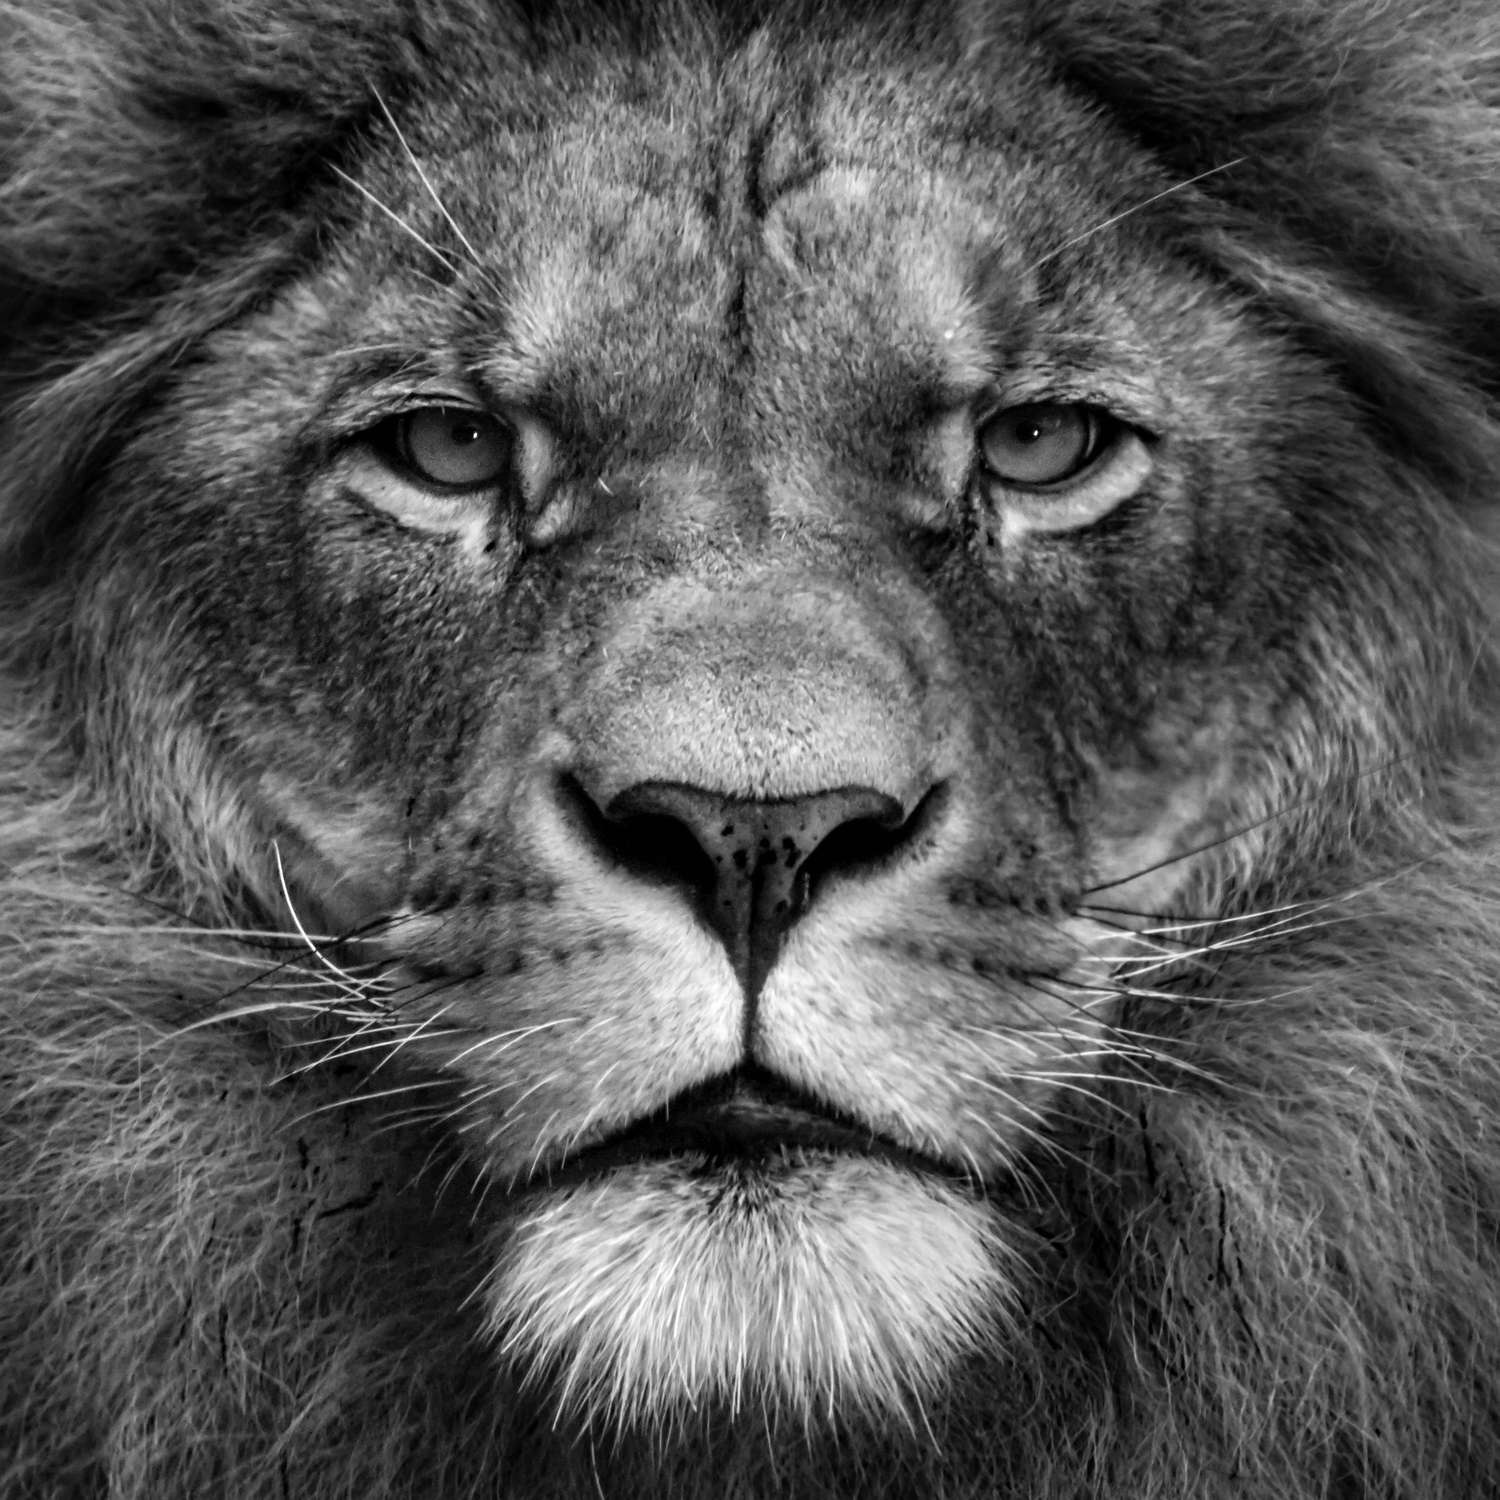             Fotomurali Faccia di leone primo piano - bianco e nero
        